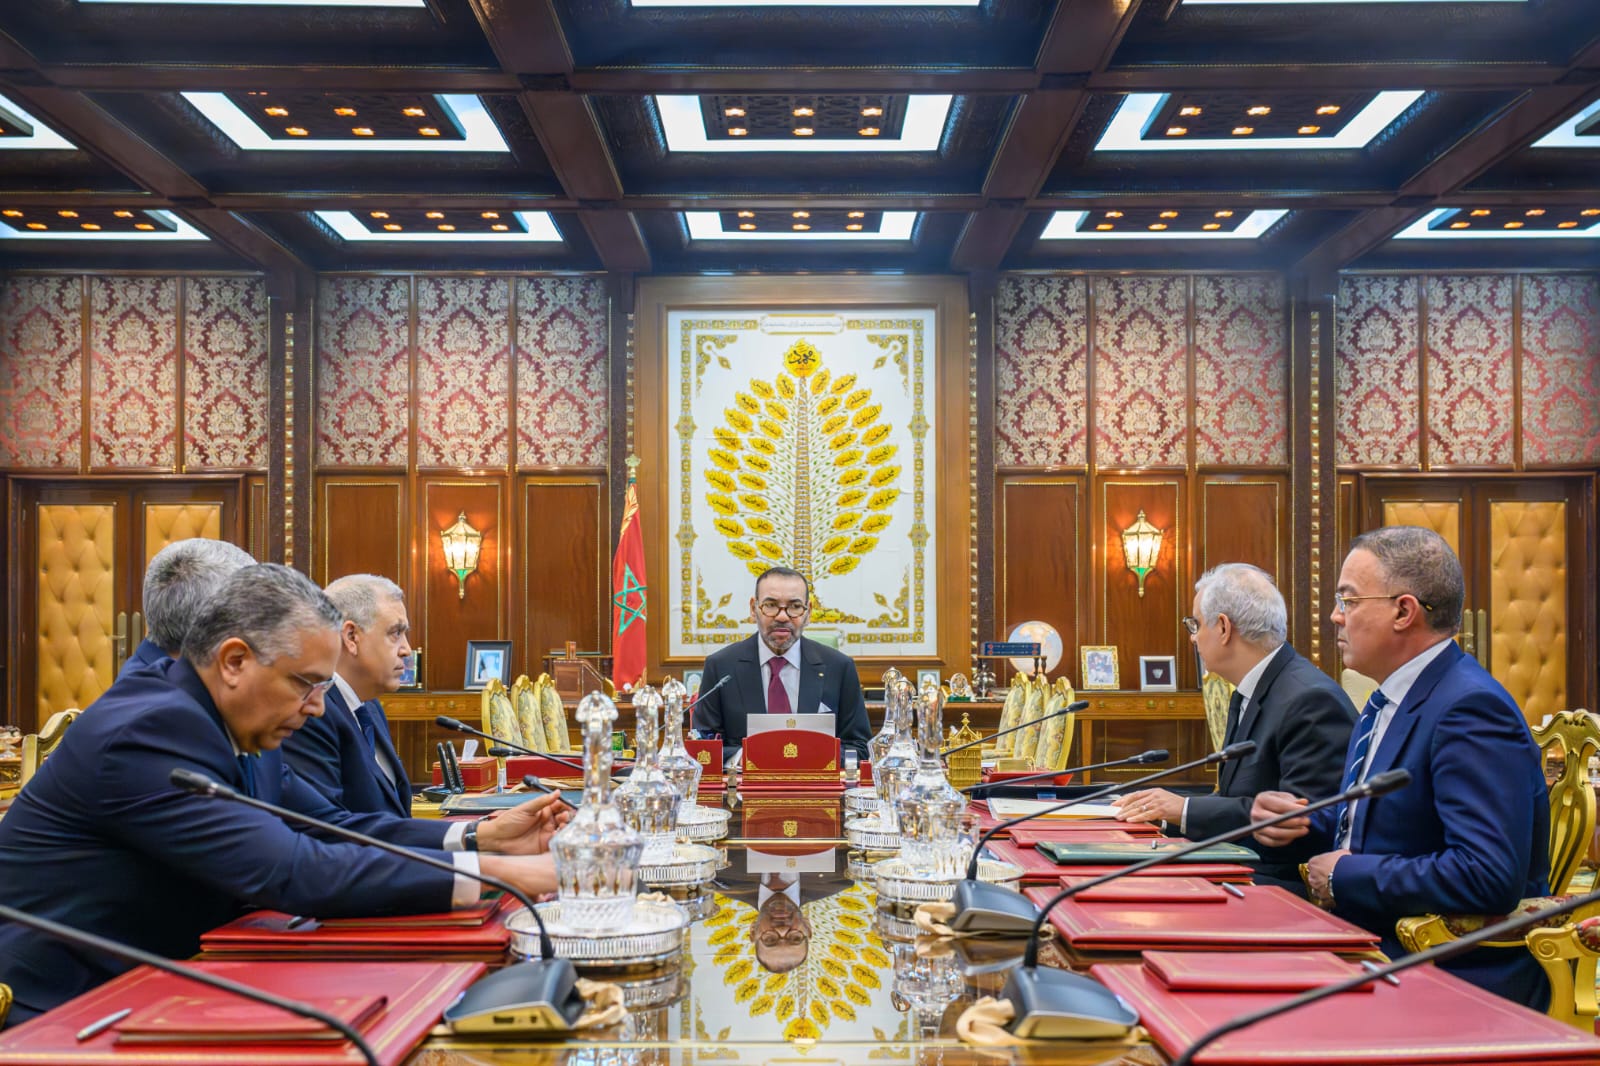 "Sa Majesté le Roi Mohammed VI, que Dieu L'assiste, a présidé, ce jour au Palais Royal de Rabat, une séance de travail consacrée à la problématique de l’Eau.